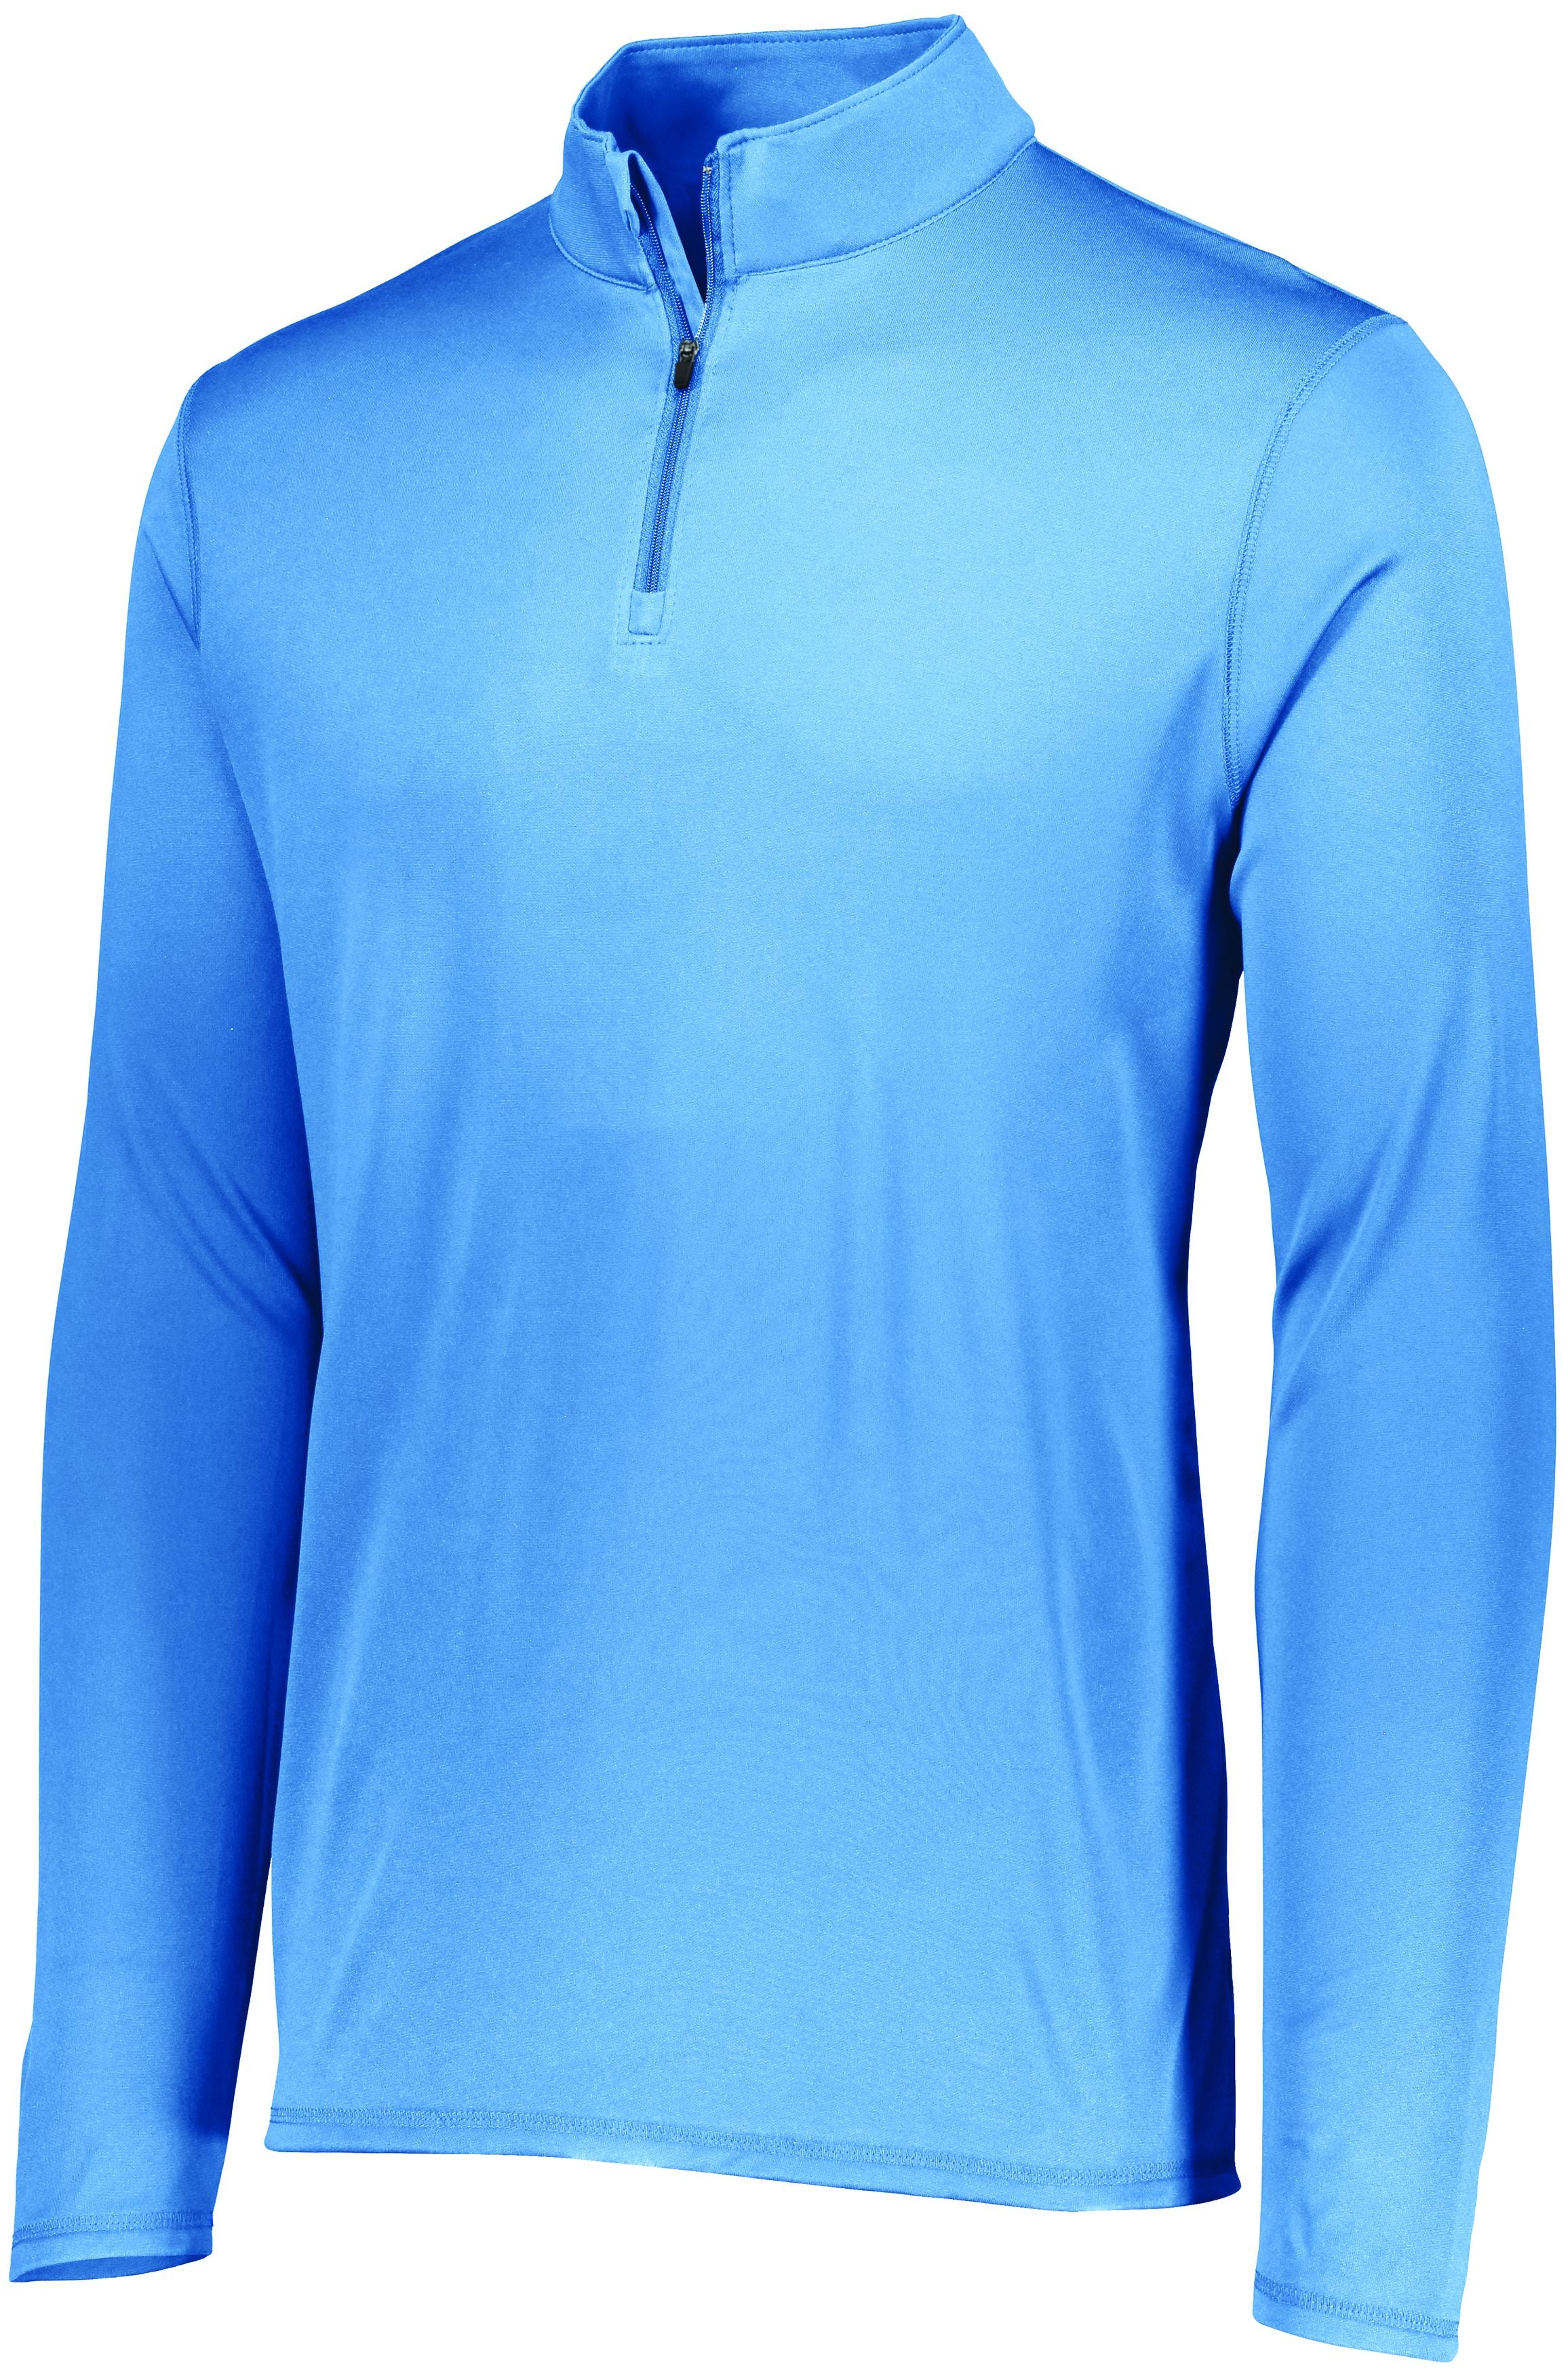 Augusta Sportswear Attain Wicking 1/4 Zip Pullover